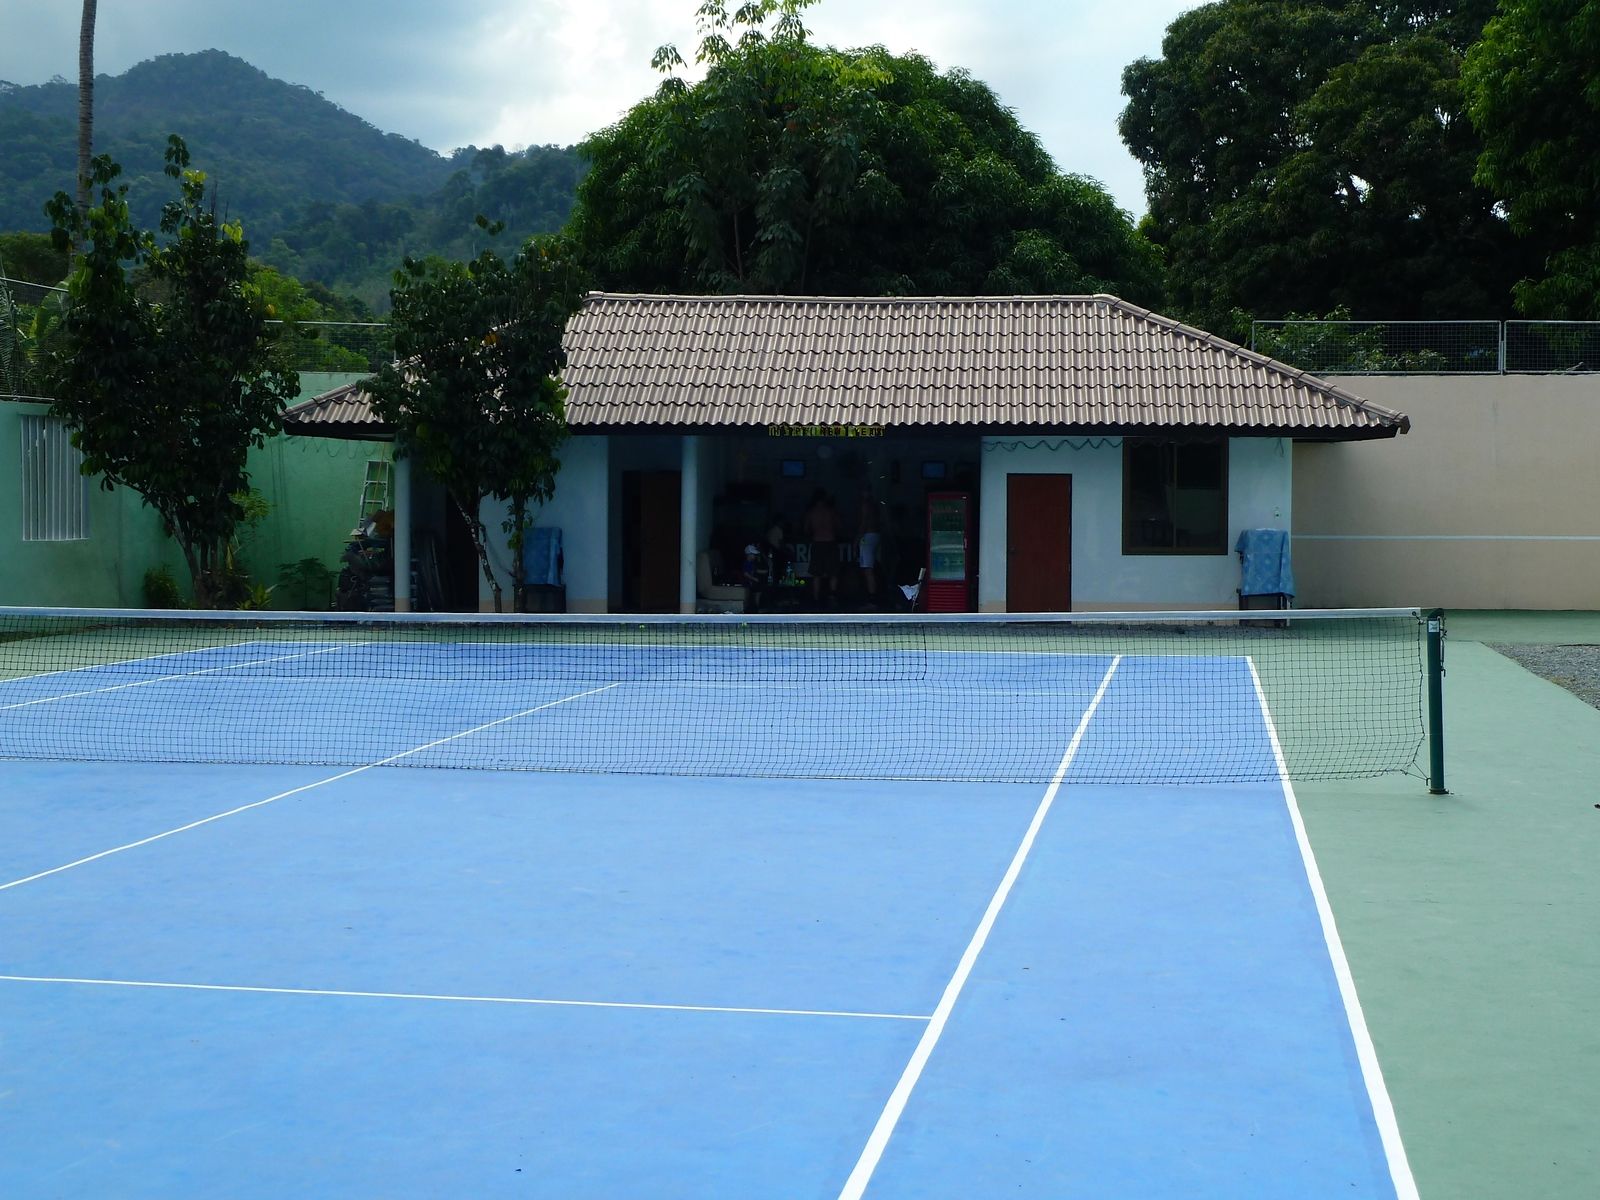 tennis-tourist-koh-chang-thailand-tennis-club-pro-shop-and-mountains-teri-church